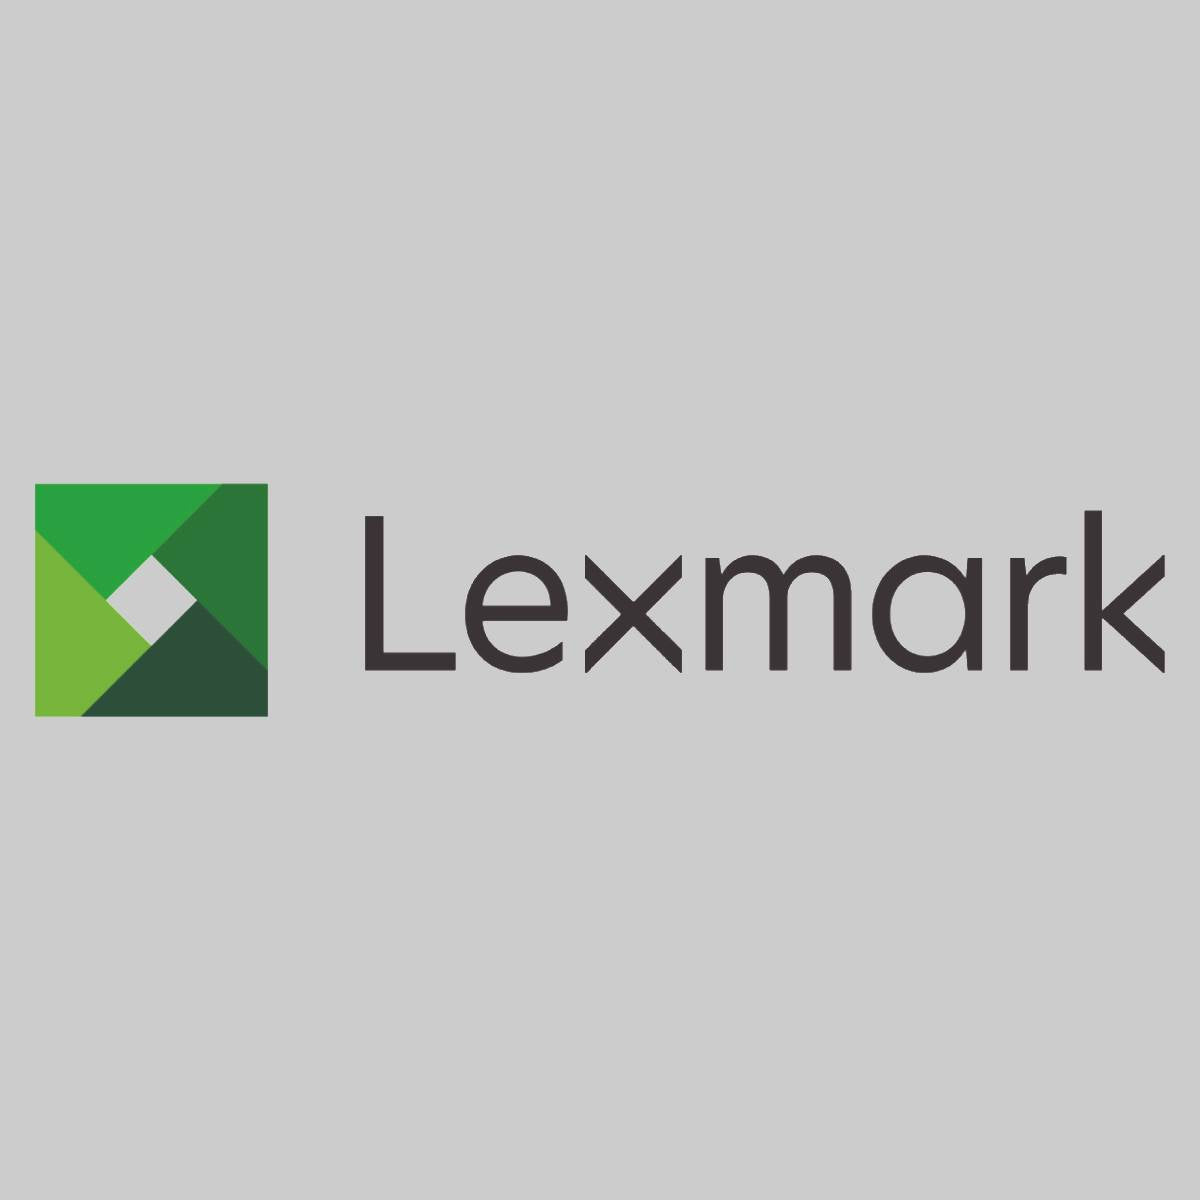 "Original Lexmark Yellow Developer 40X3744 für C935dn C935dtn C935dttn C935hdn